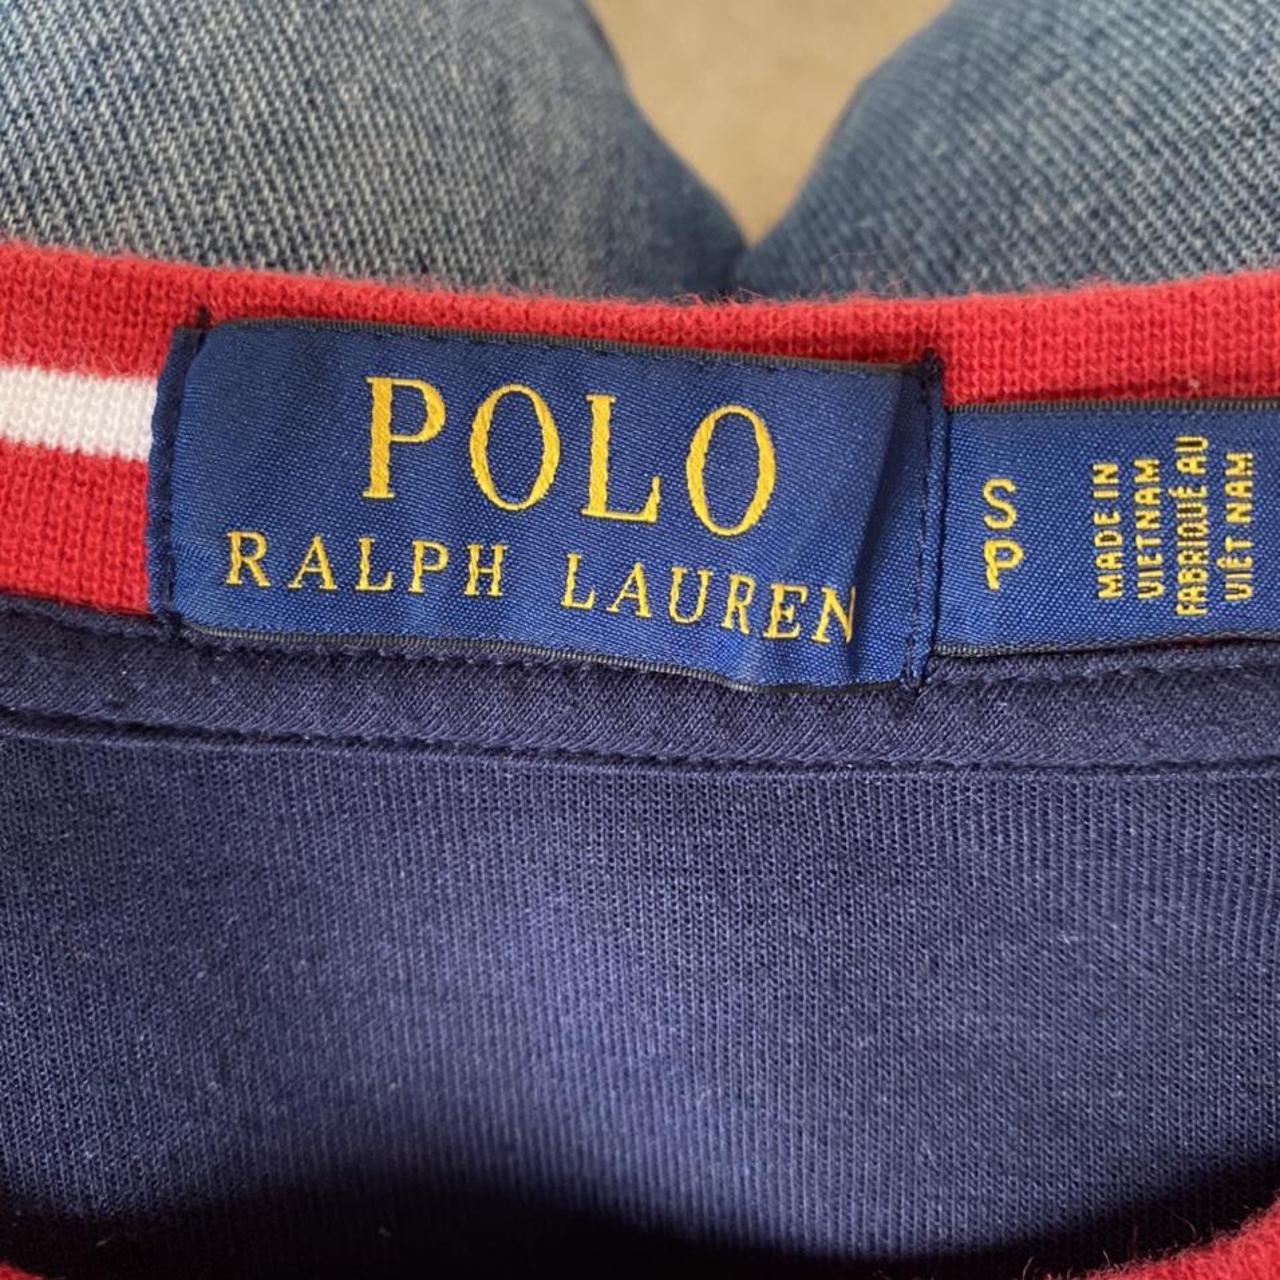 Product Image 2 - Men’s Polo Ralph Lauren sweatshirt